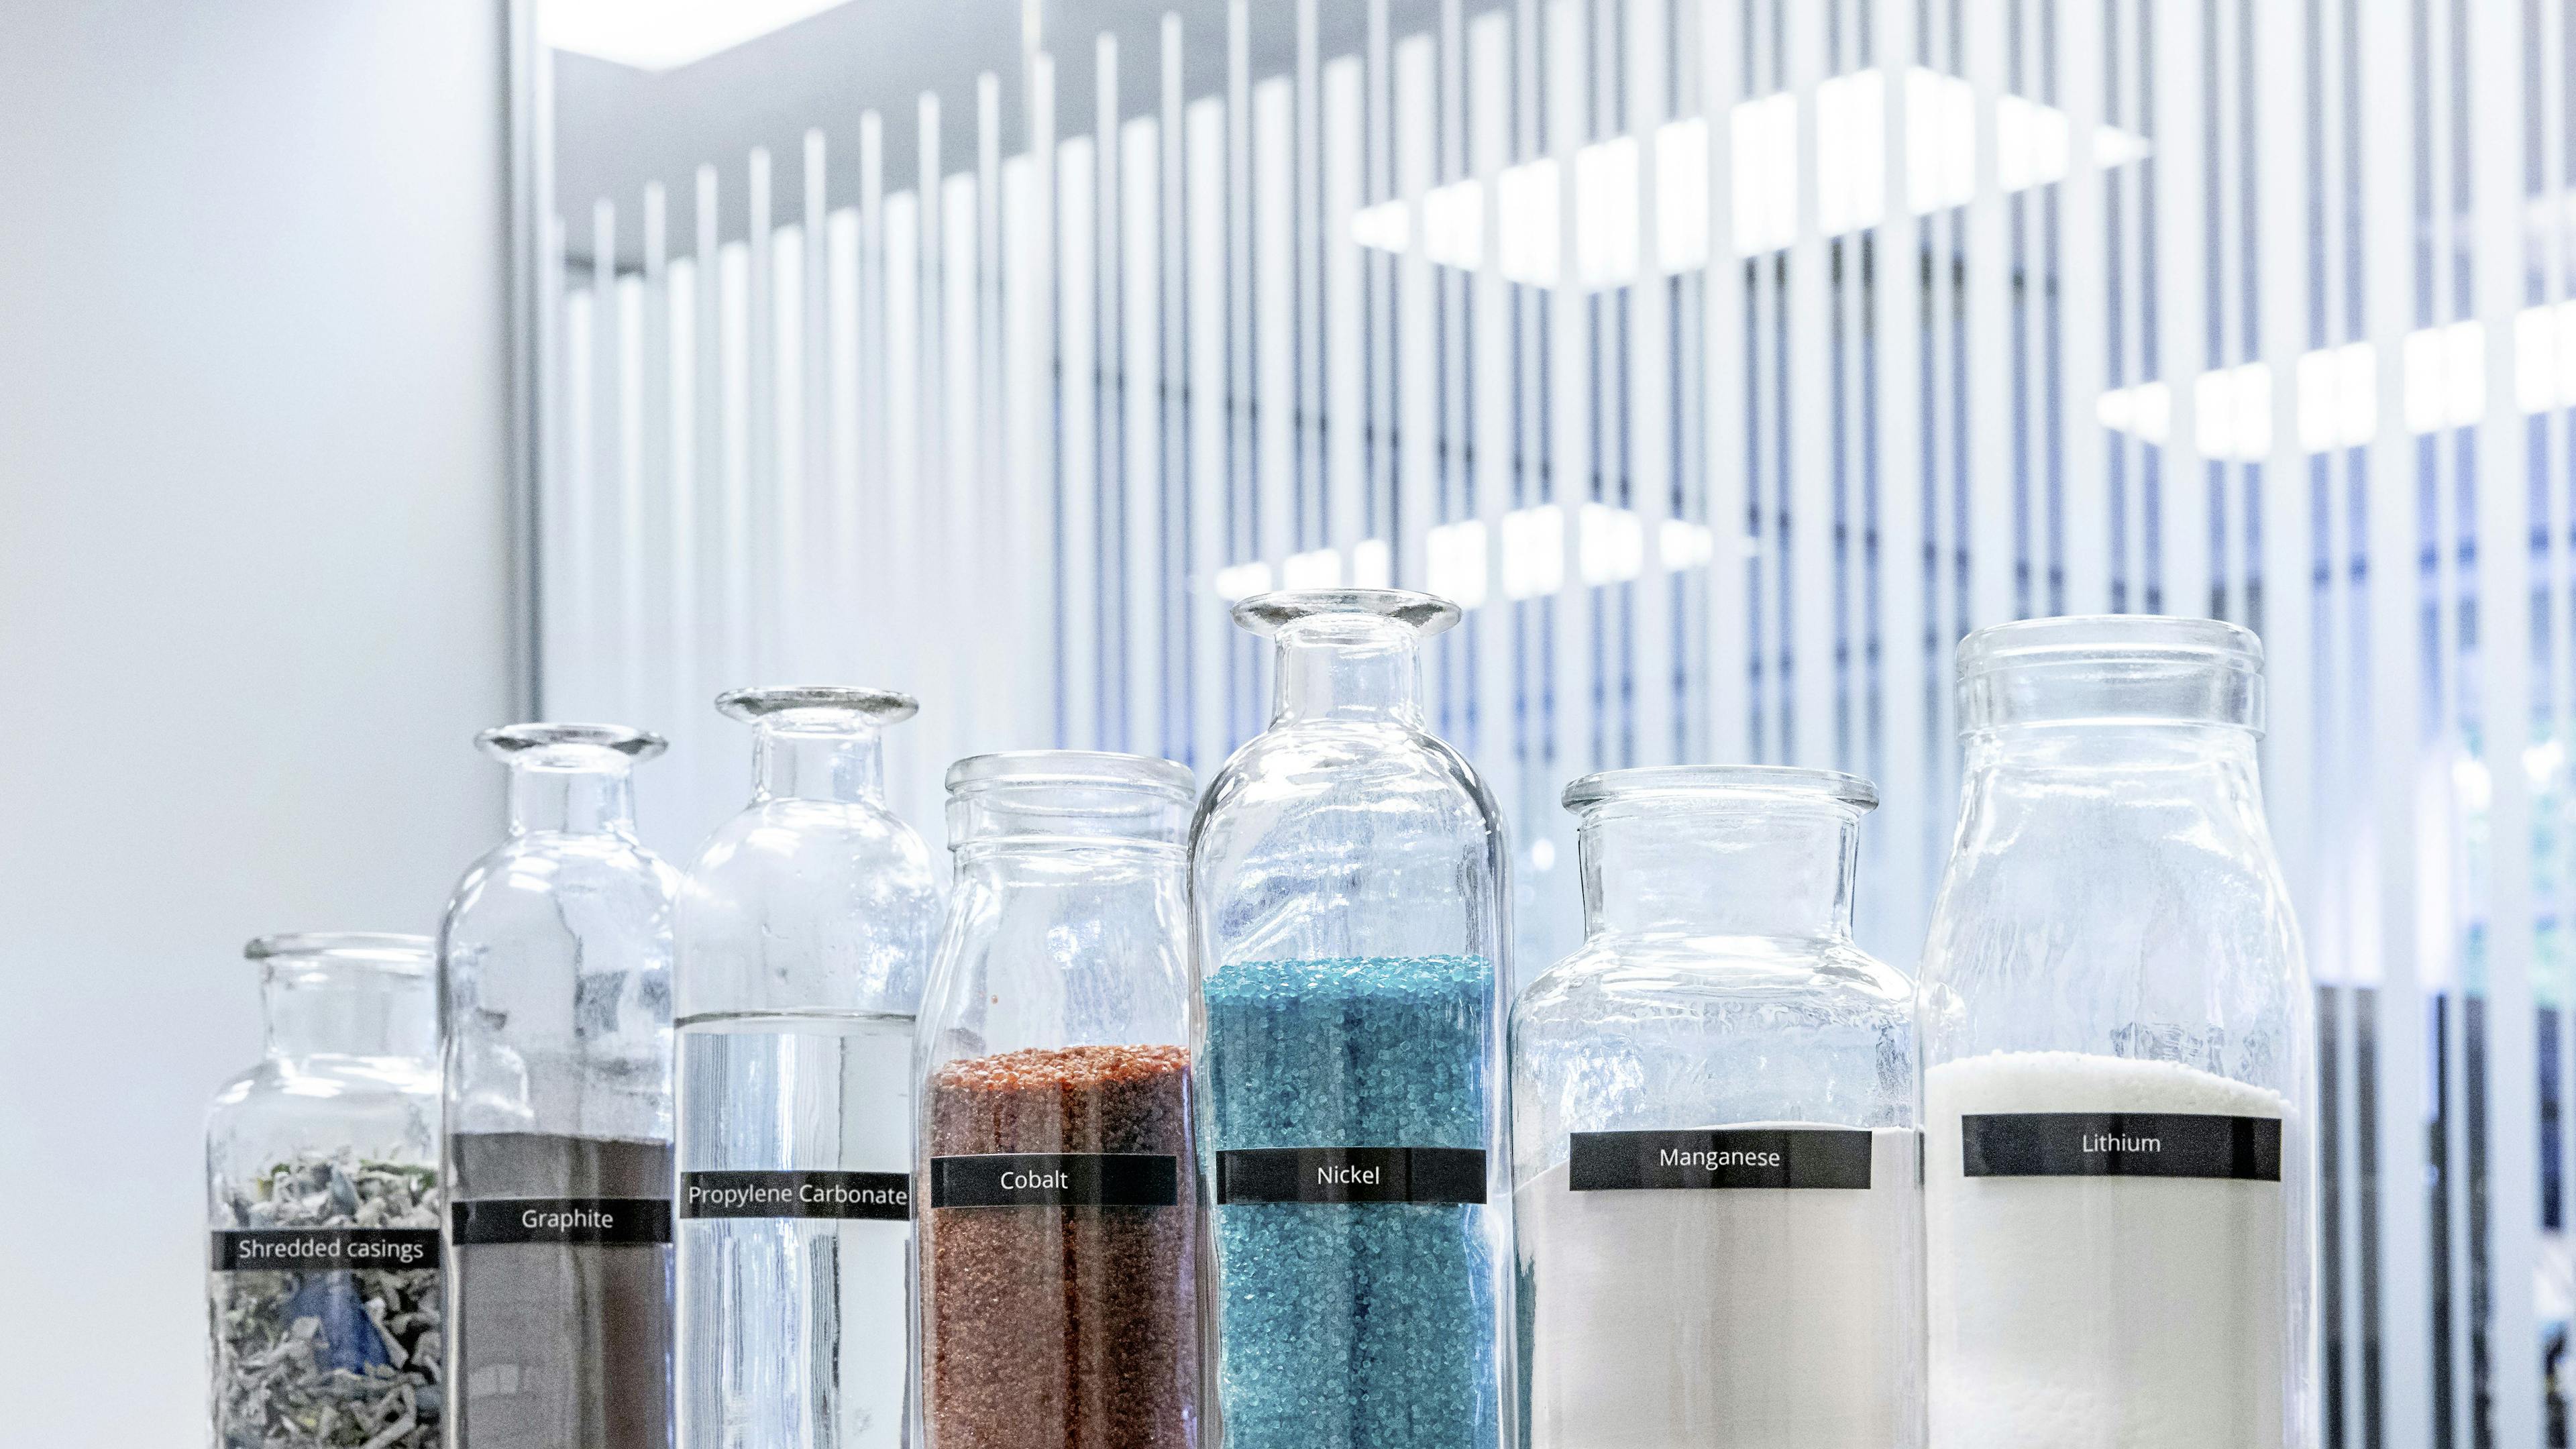 Gläser mit Nickel, Kobalt, Lithium und andere Materialeien in einem Labor.